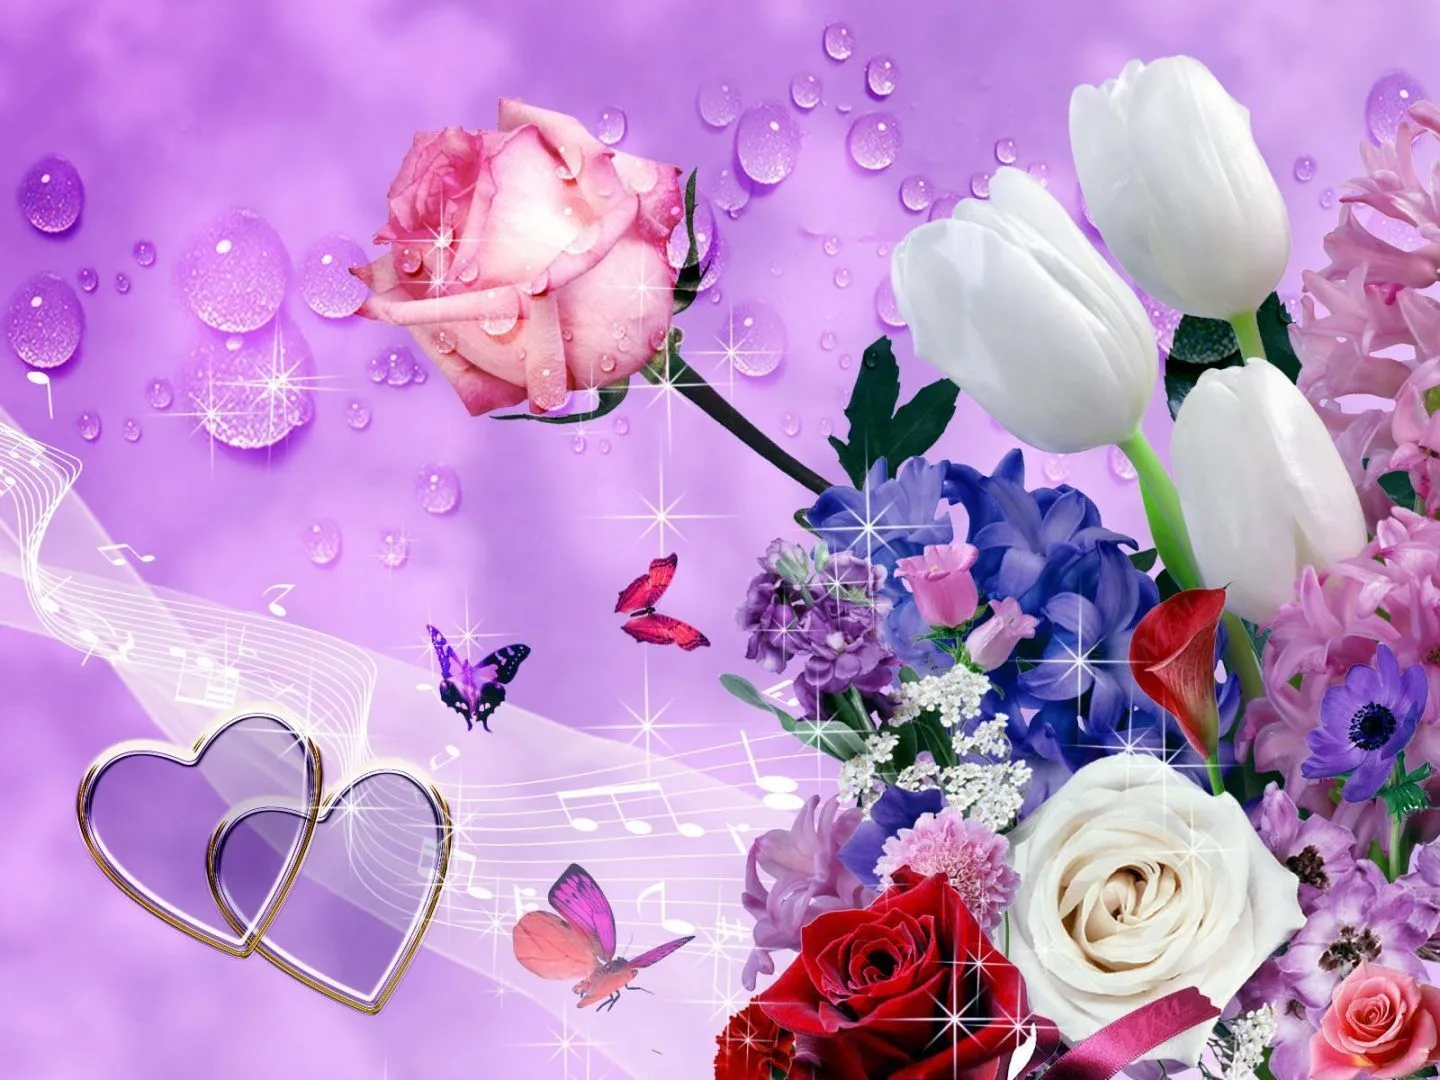 17 mejores ideas sobre Imagenes De Flores Preciosas en Pinterest ...